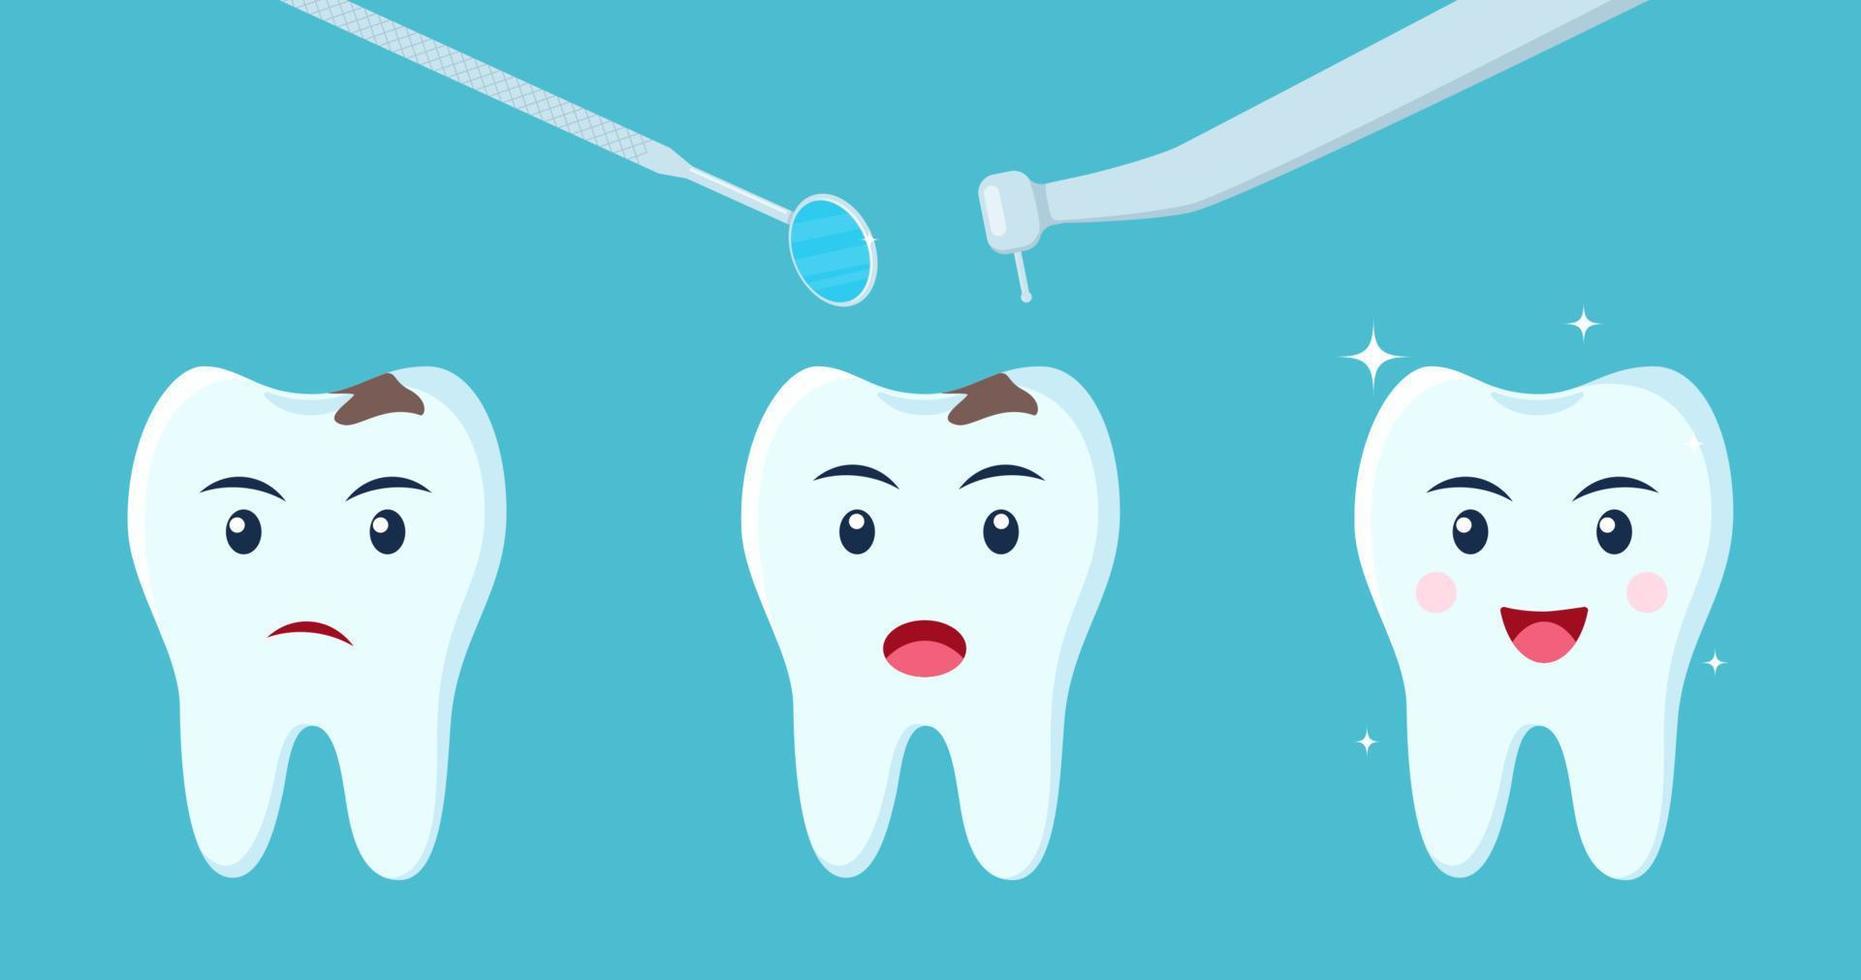 upprörd dental karaktär med karies får behandling, blir friska, skinande och skyddad. stadier av dental behandling. platt vektor illustration.